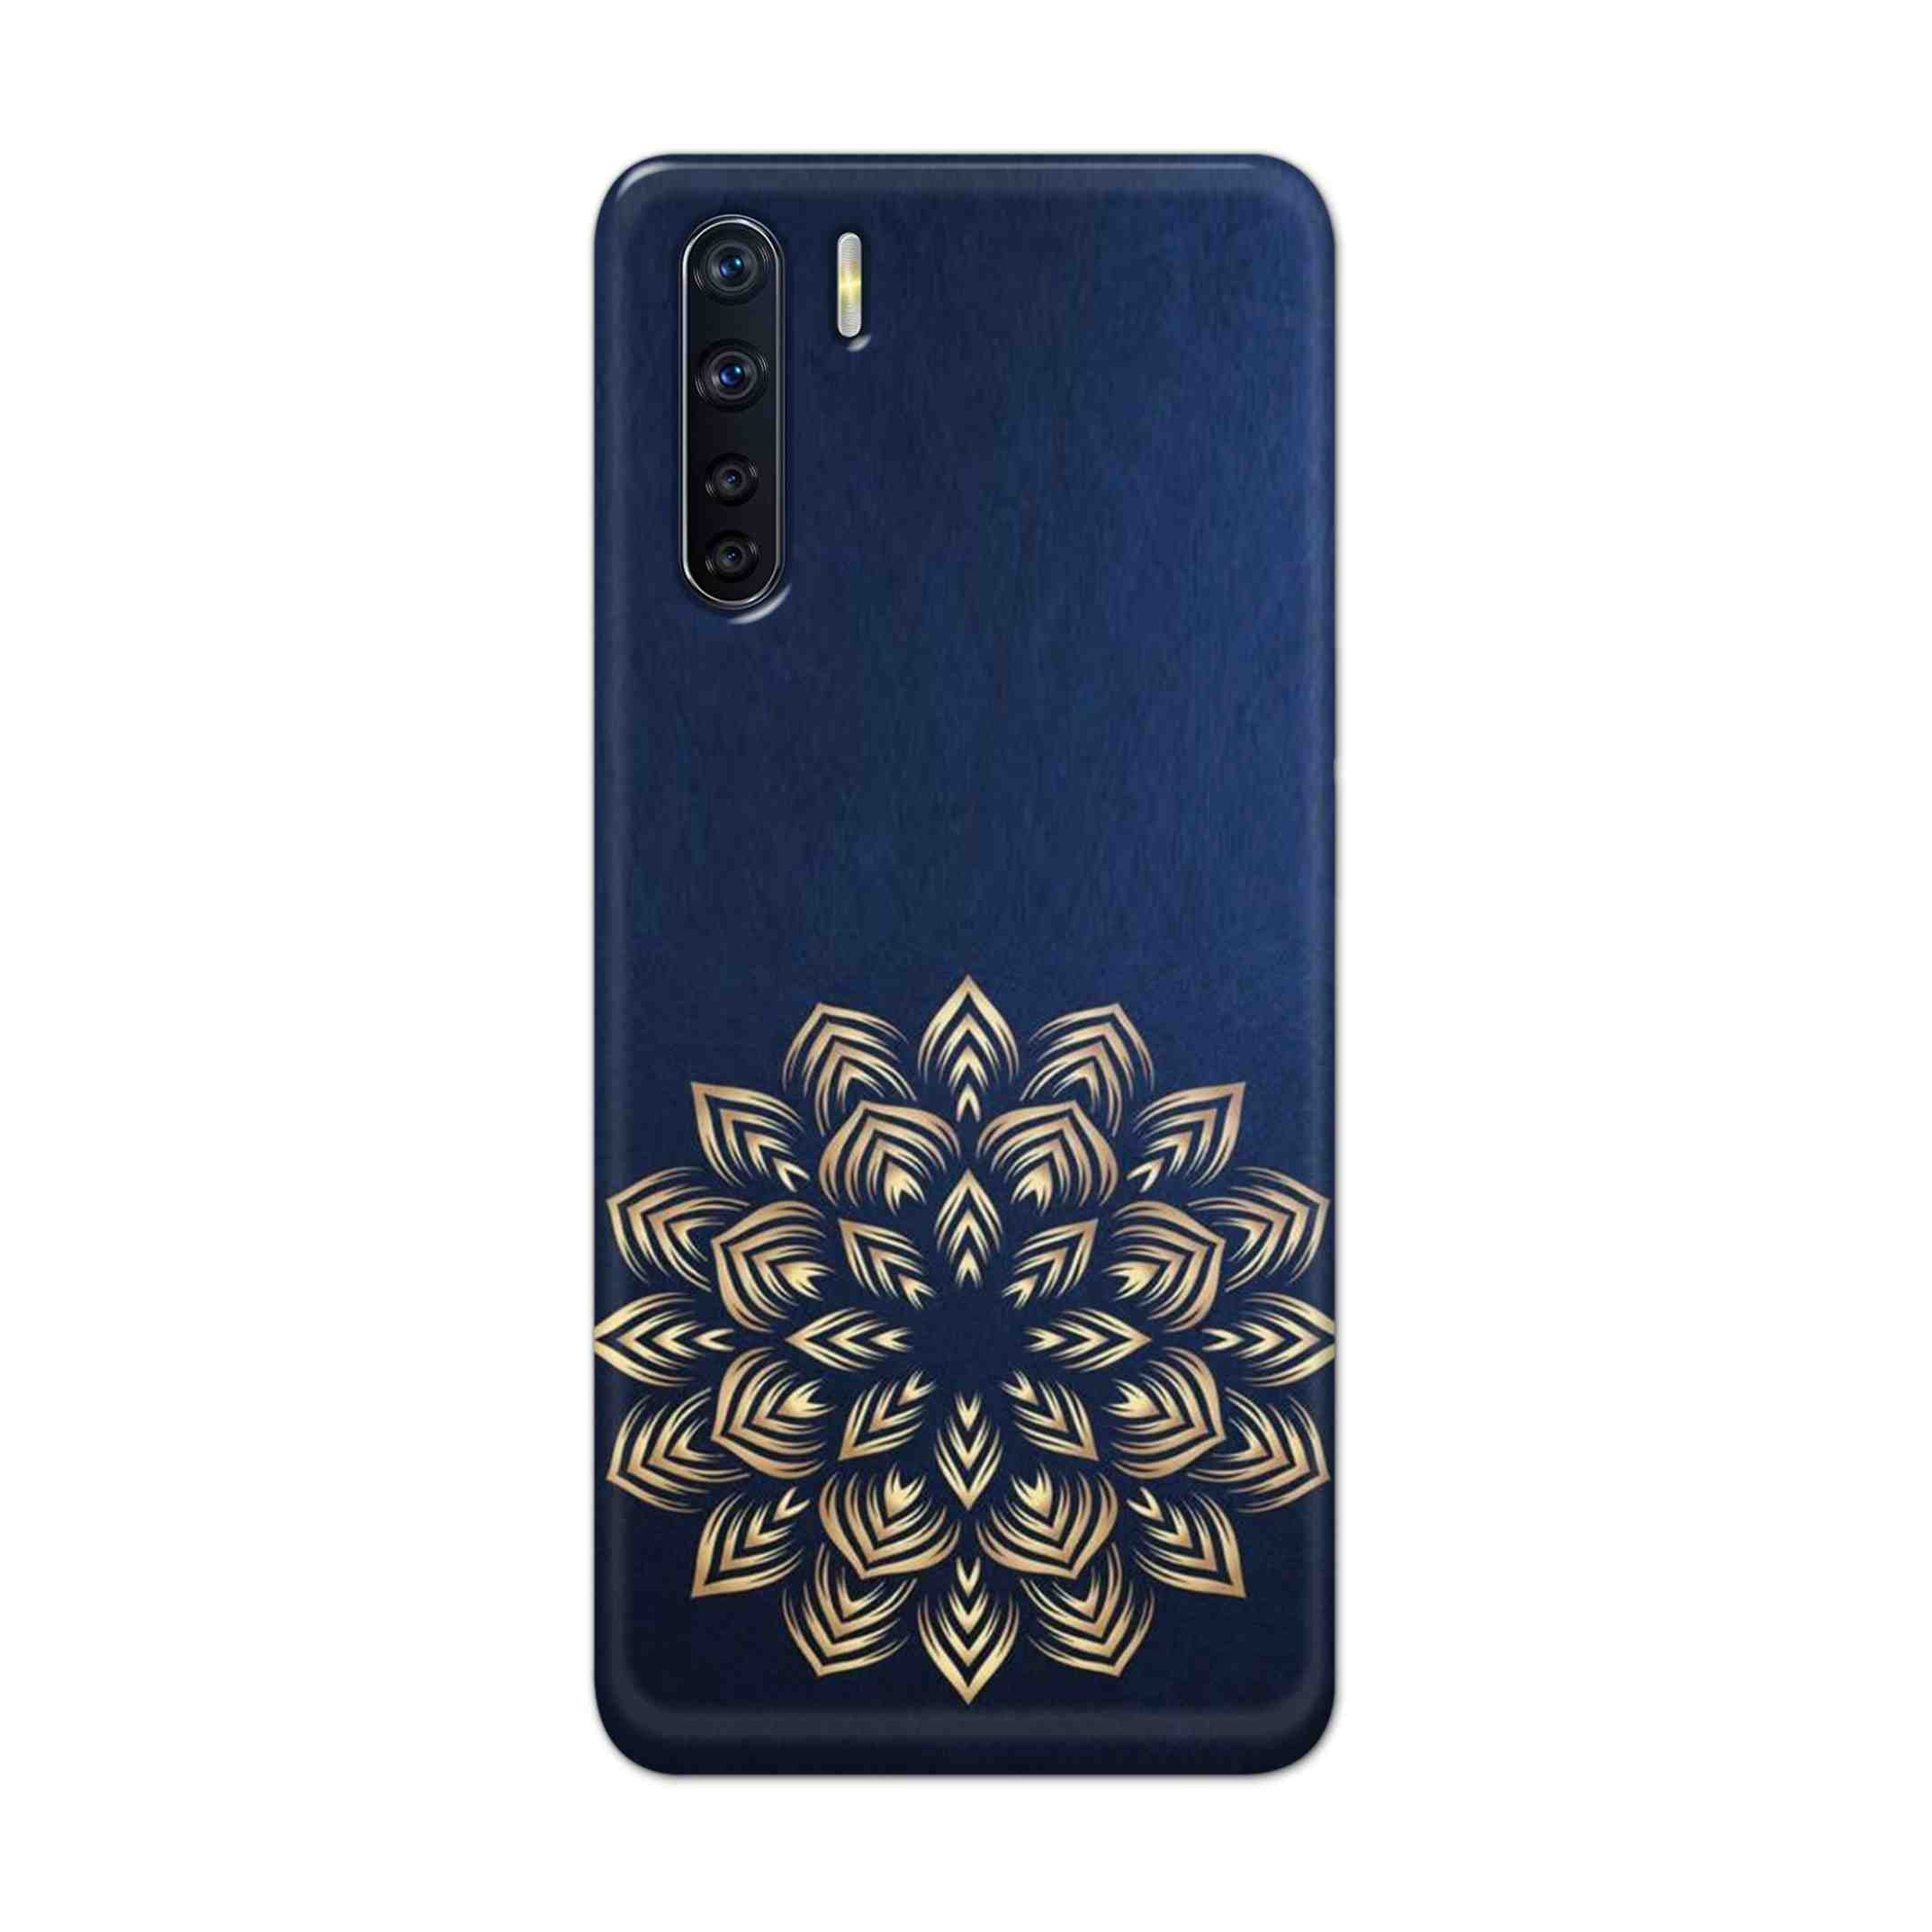 Buy Heart Mandala Hard Back Mobile Phone Case Cover For OPPO F15 Online